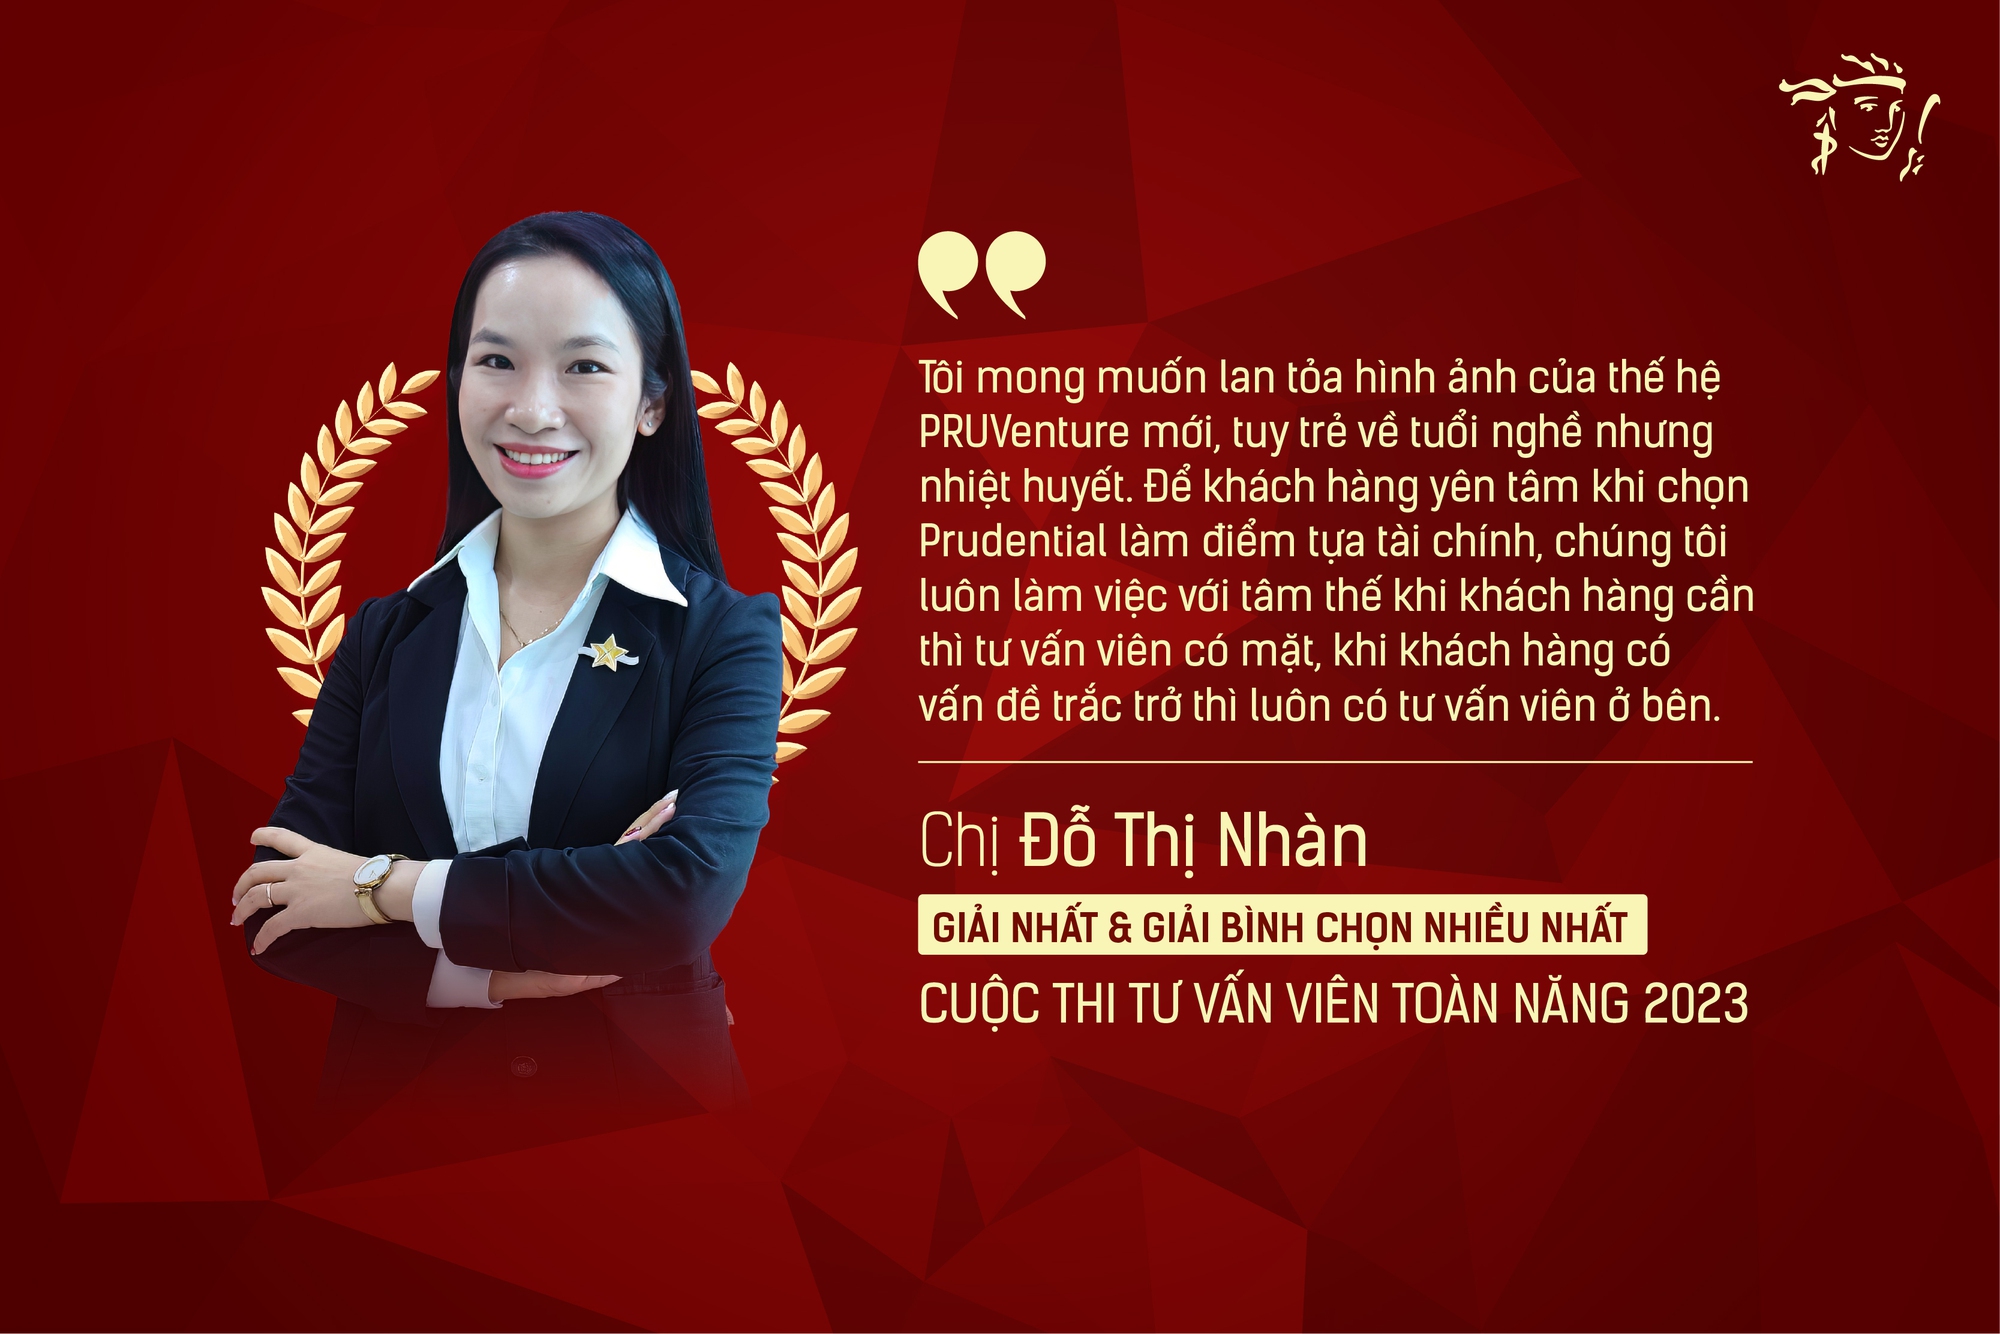 Prudential ra mắt sản phẩm giáo dục Pru hành trang trưởng thành |  baoninhbinh.org.vn